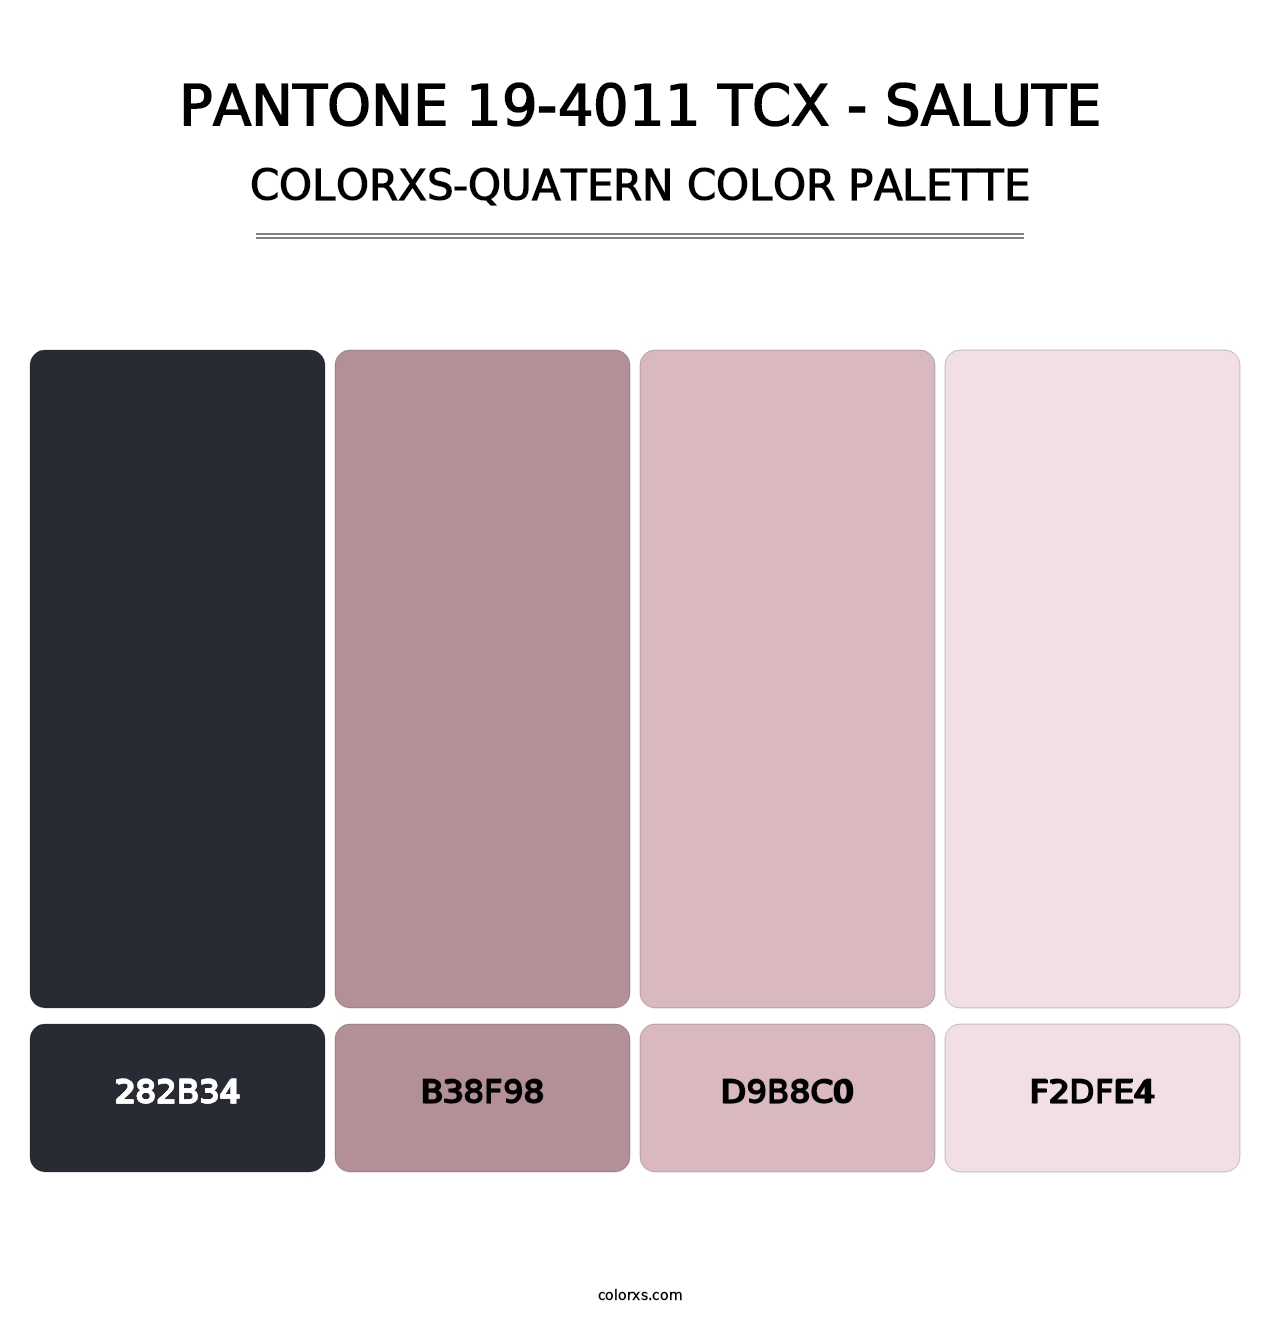 PANTONE 19-4011 TCX - Salute - Colorxs Quatern Palette